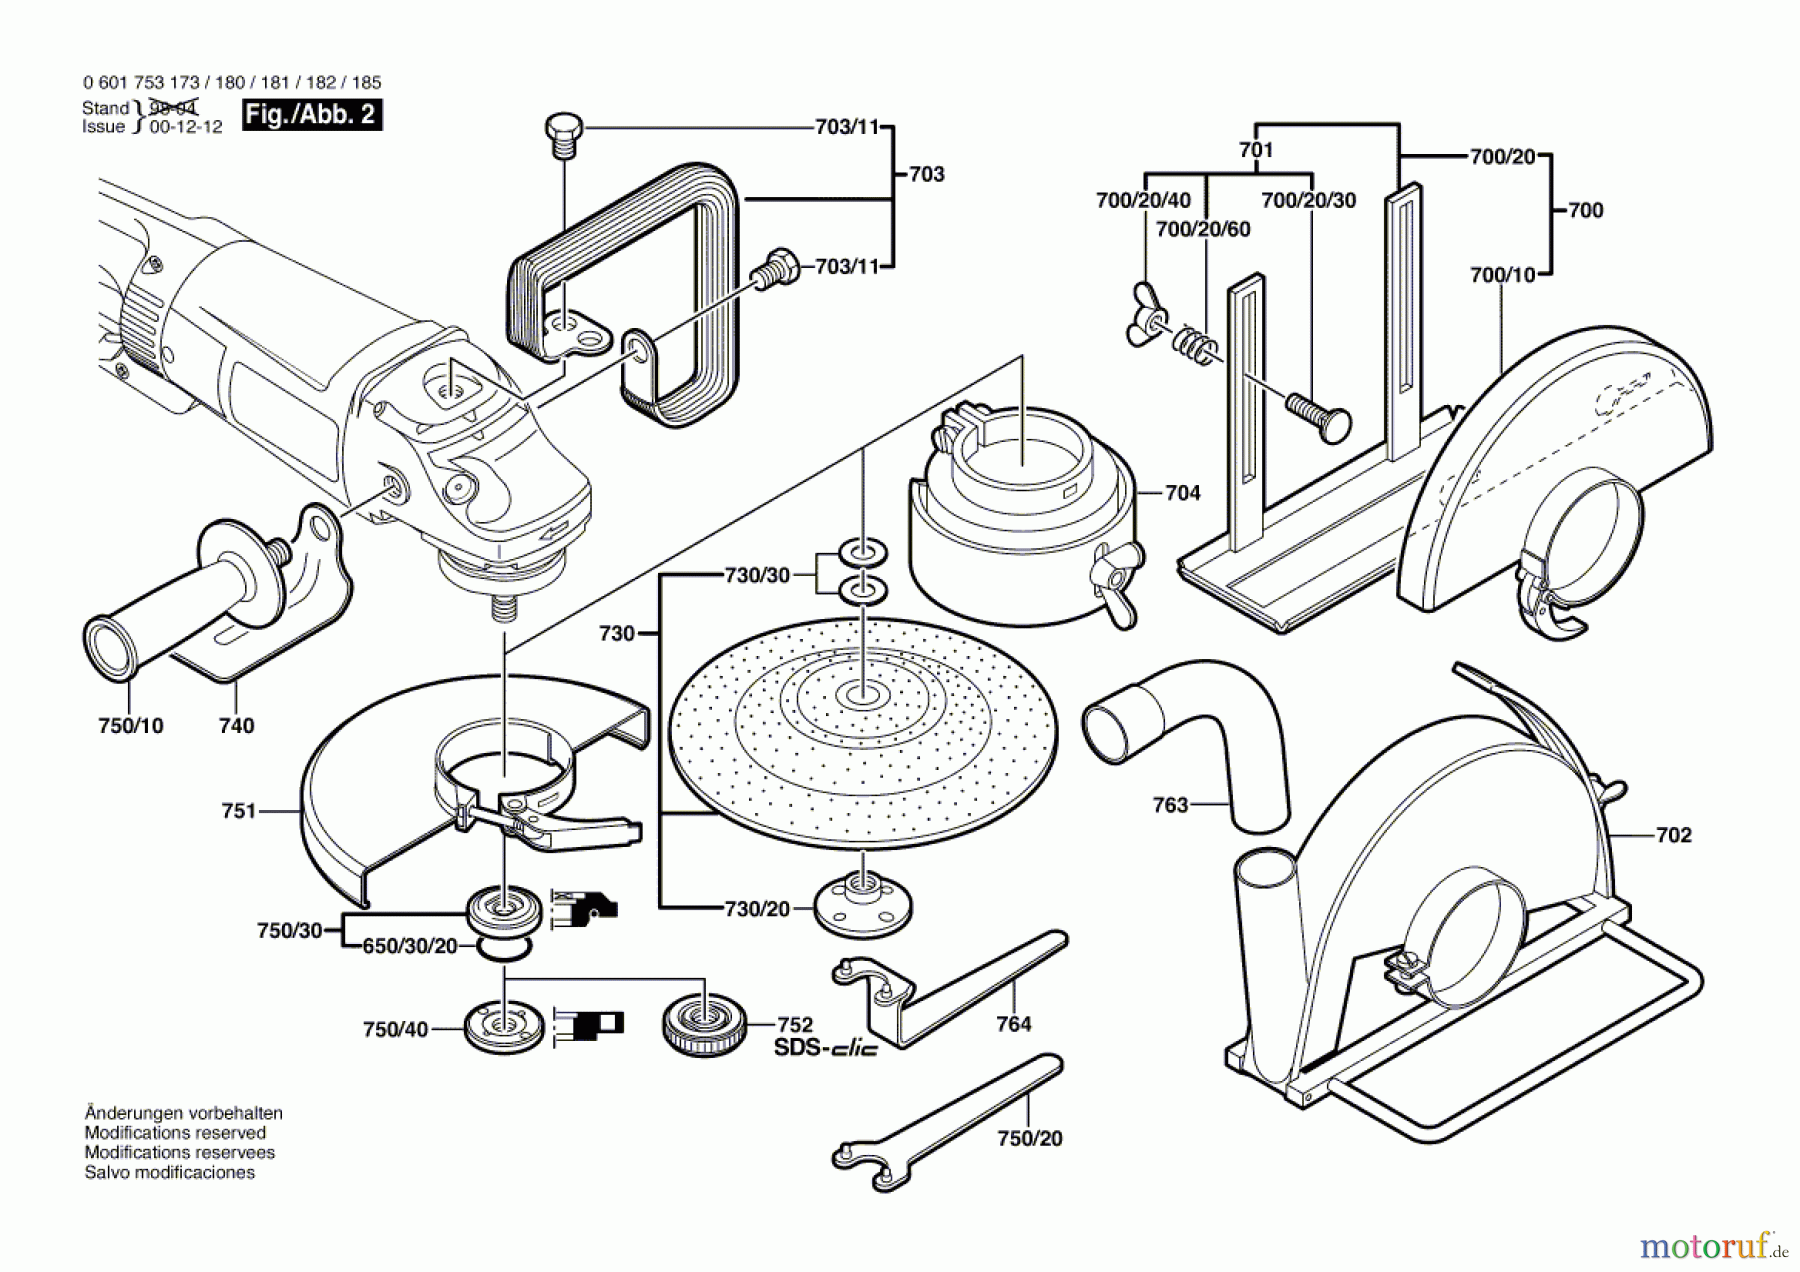  Bosch Werkzeug Winkelschleifer GWS 23-180 + SDS Seite 2